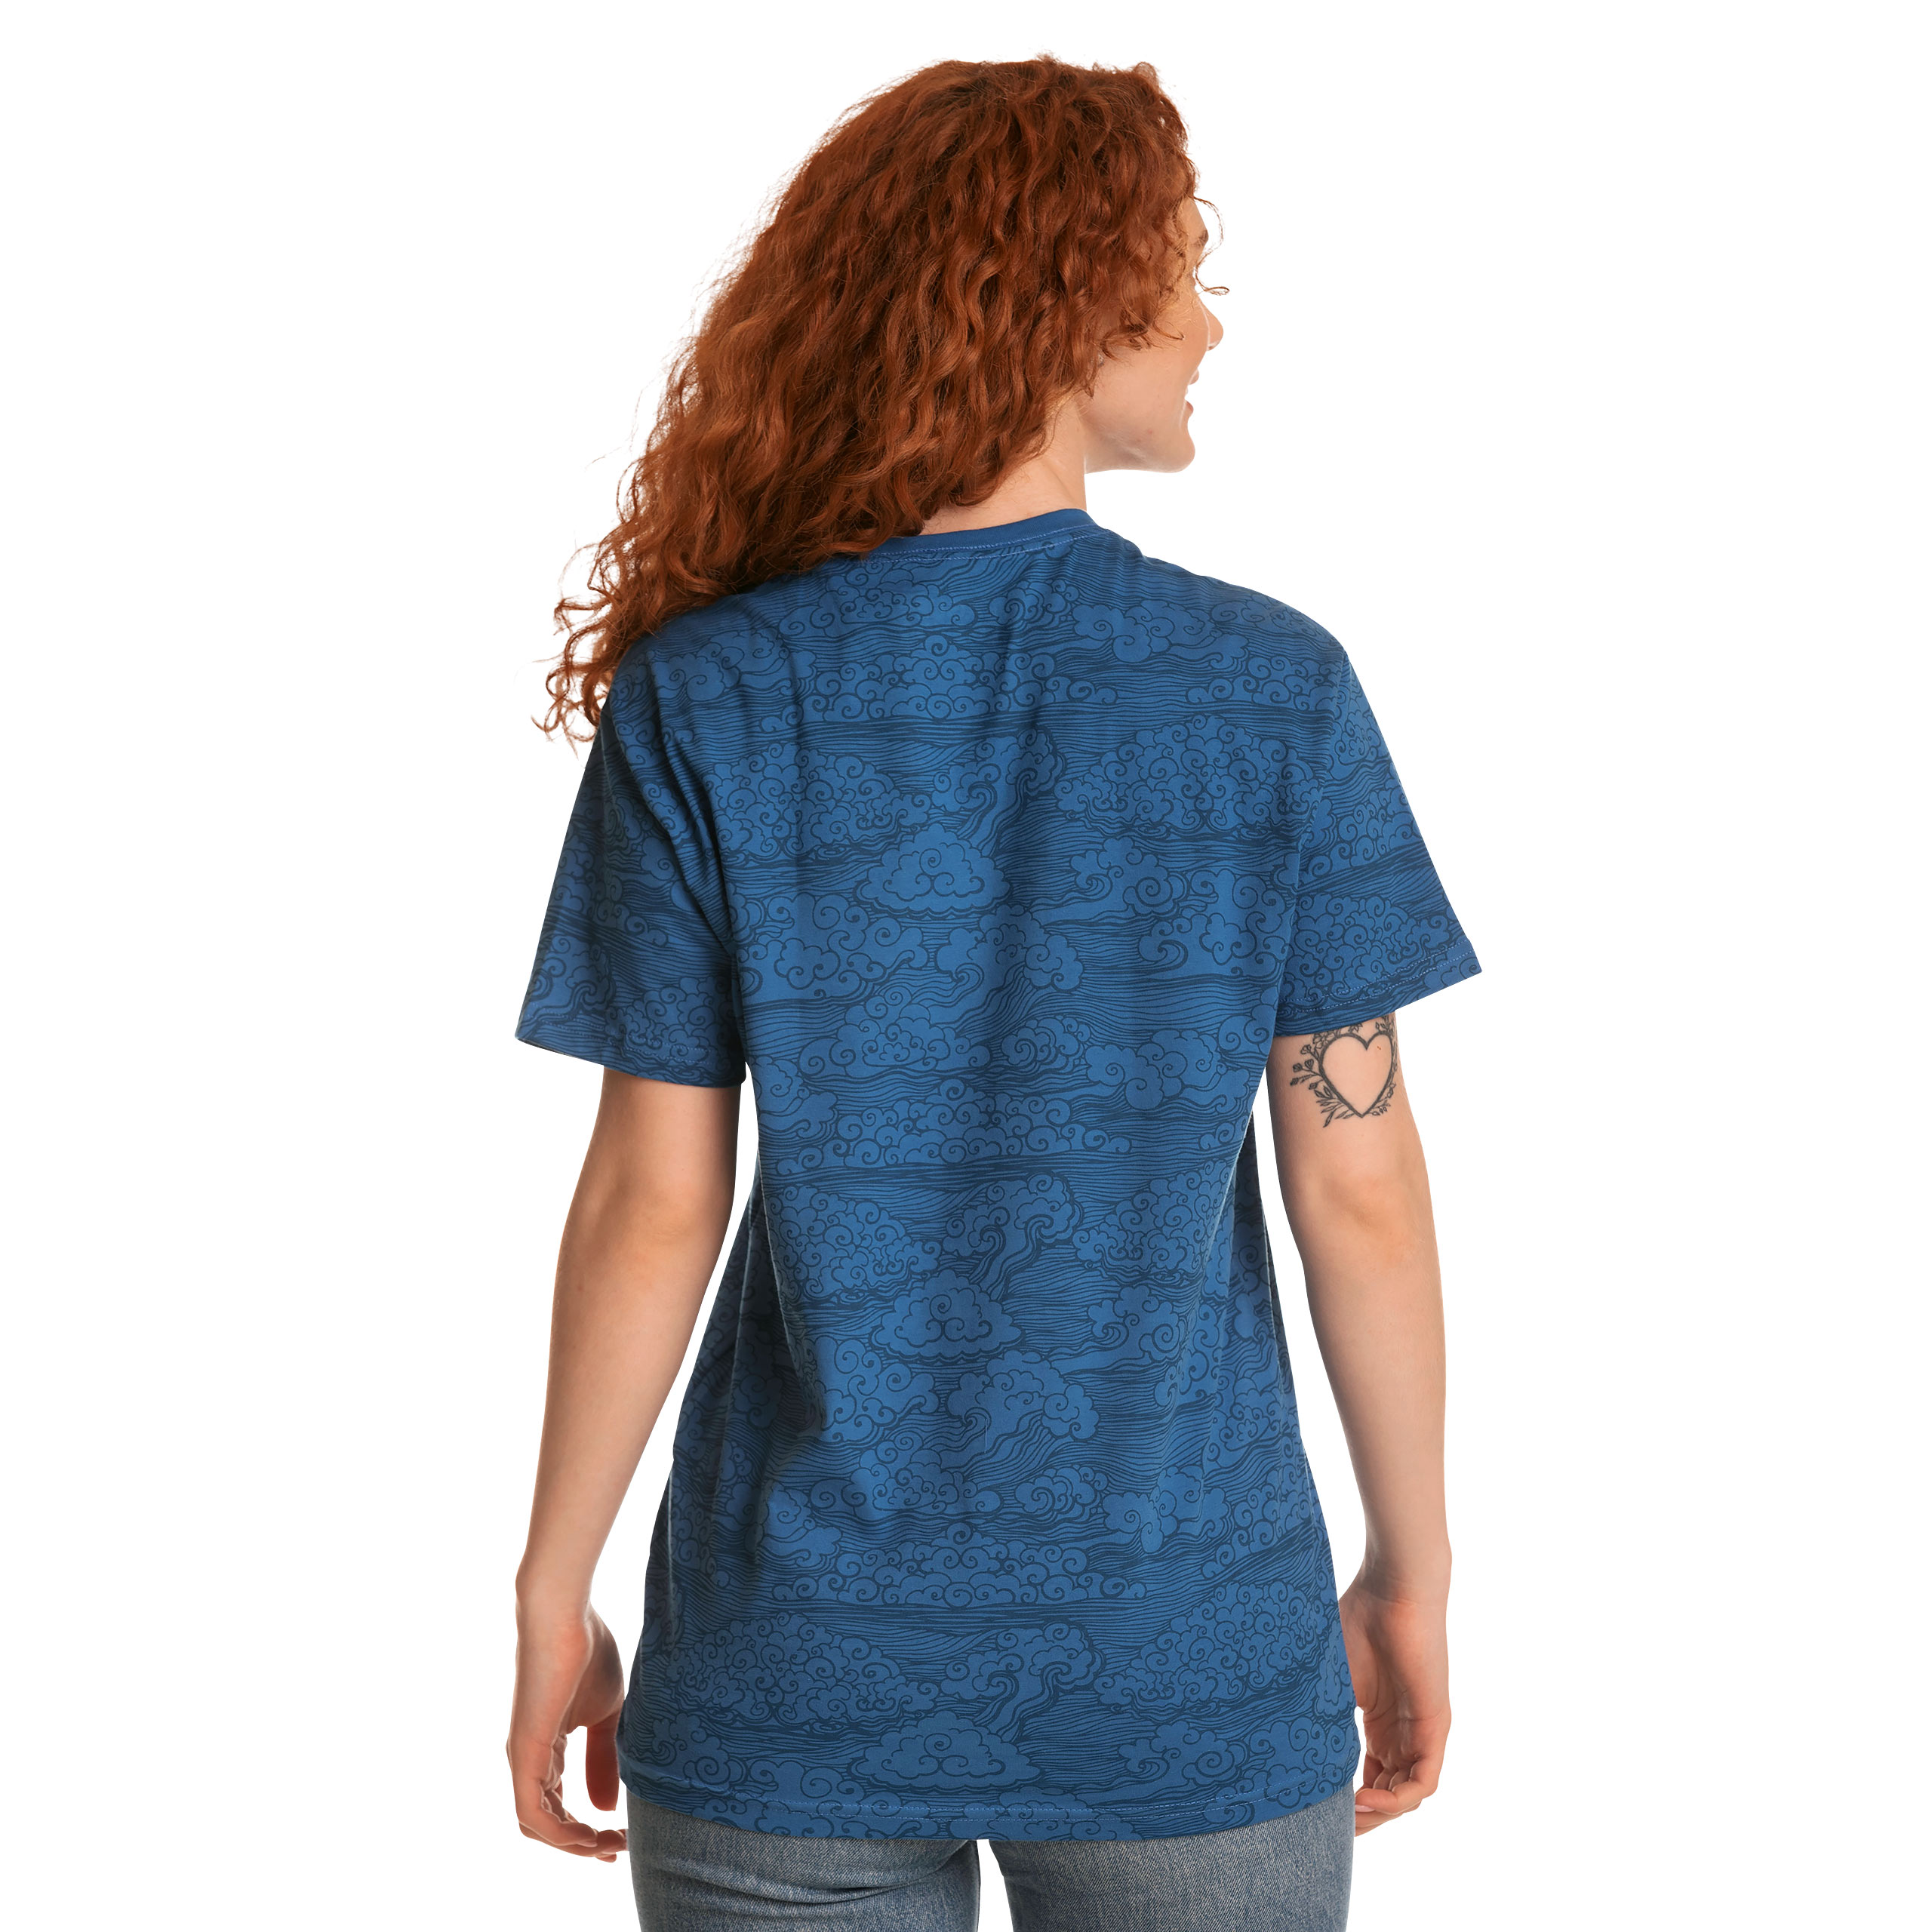 League of Legends - T-shirt Logo Bleu